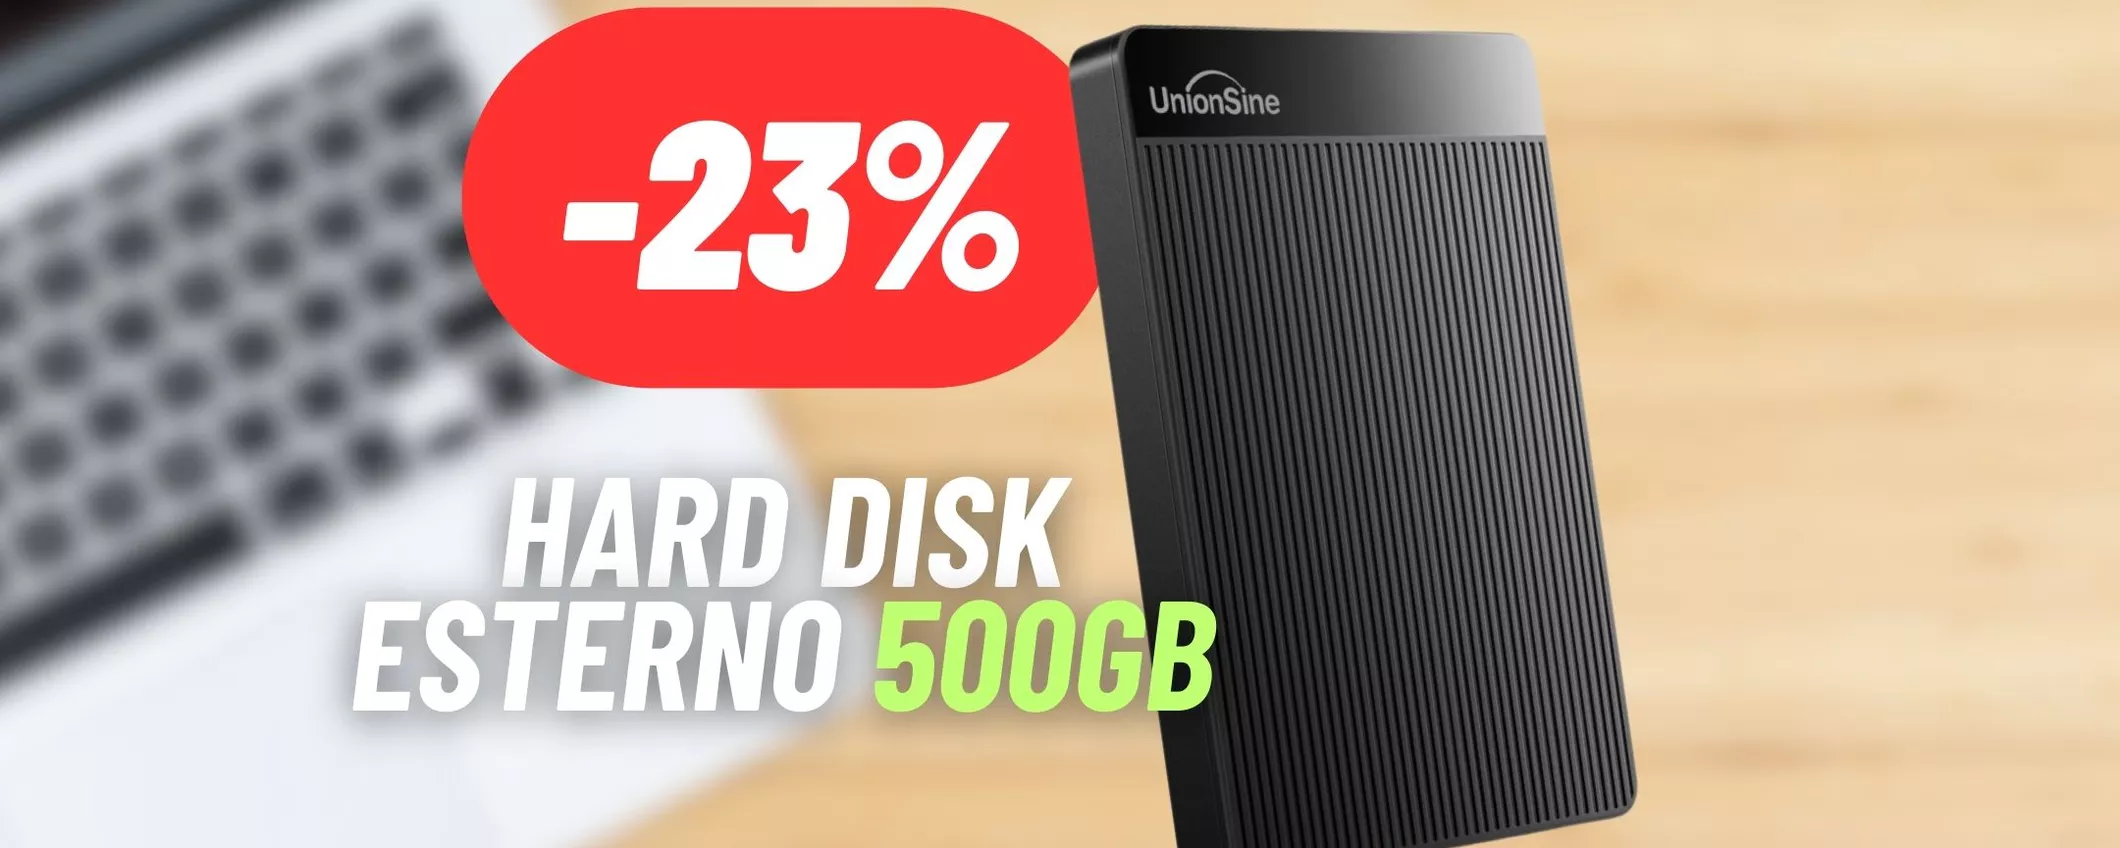 Porta a spasso 500GB con l'hard disk esterno ultrasottile compatibile con tutti i dispositivi: MEGA SCONTO